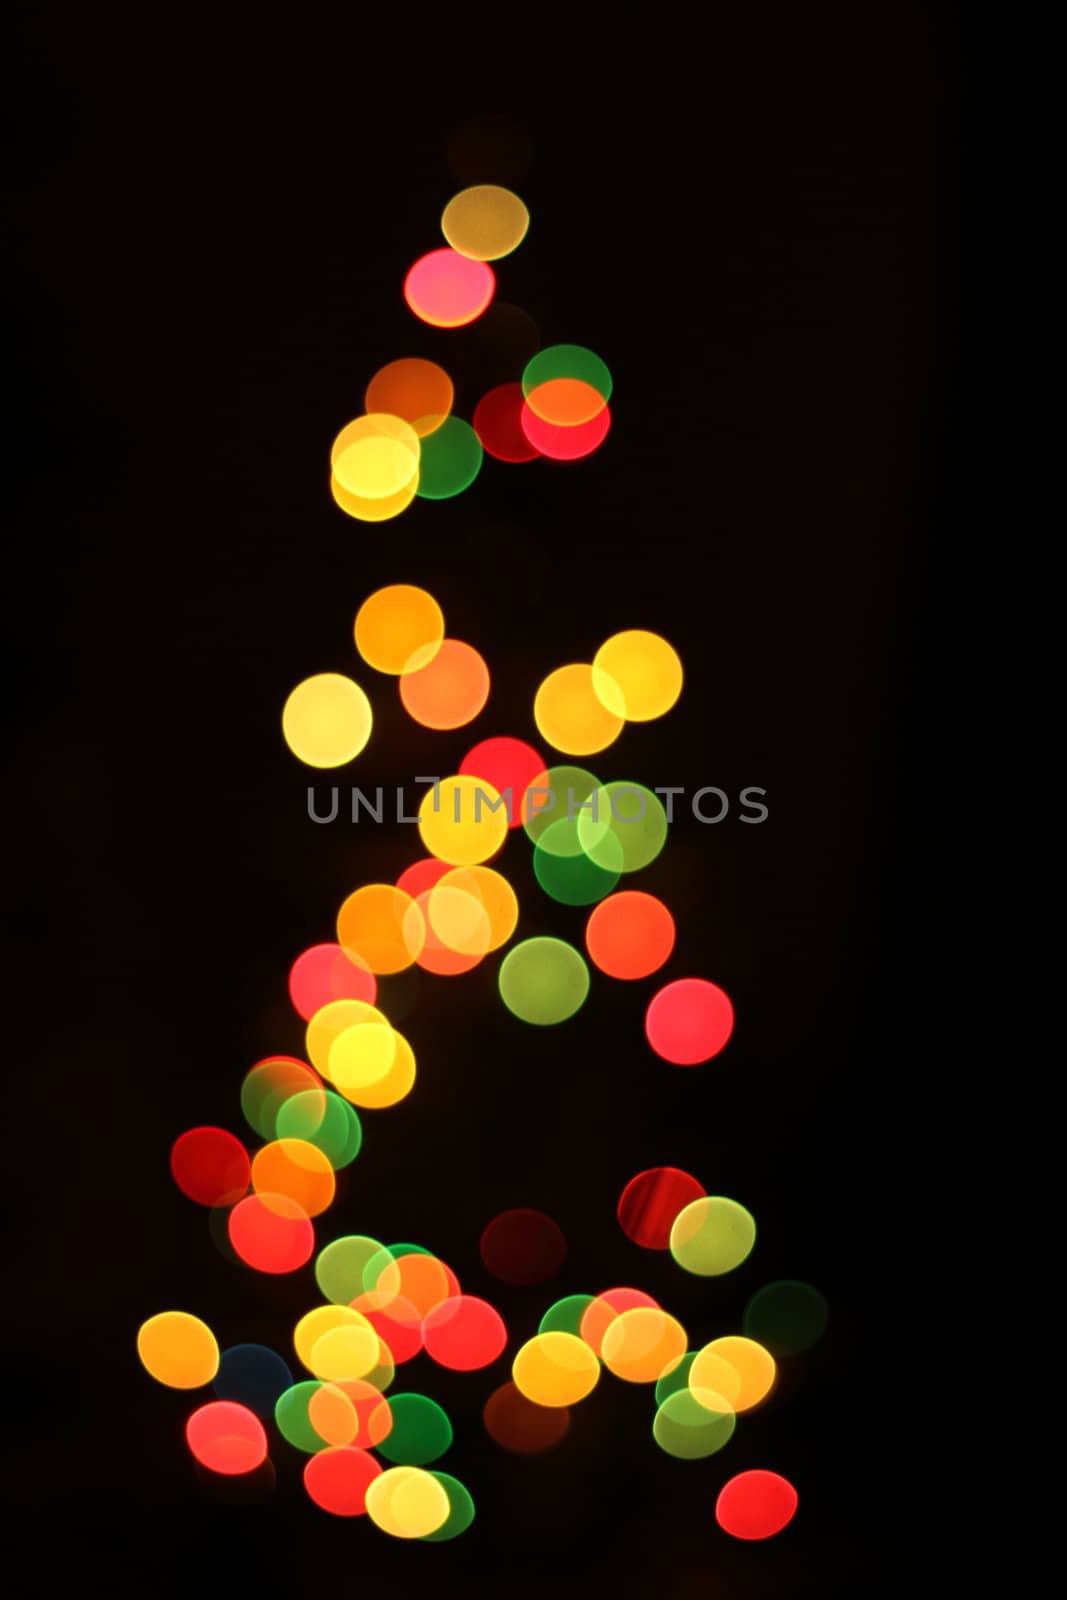 christmas lights as xmas tree by jonnysek